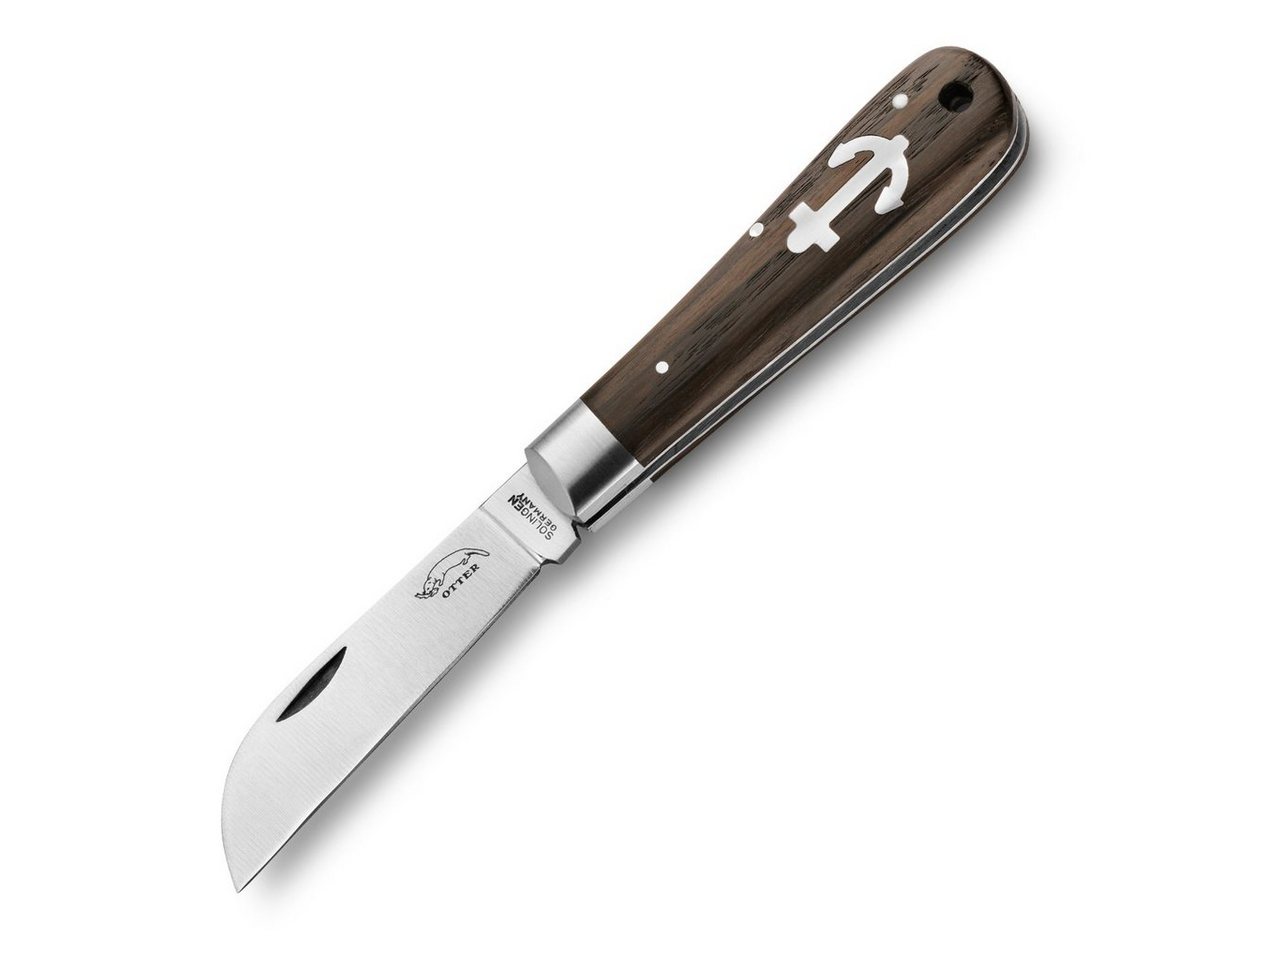 Otter Messer Taschenmesser Anker-Messer groß Räuchereiche Carbonstahlklinge, Slipjoint von Otter Messer